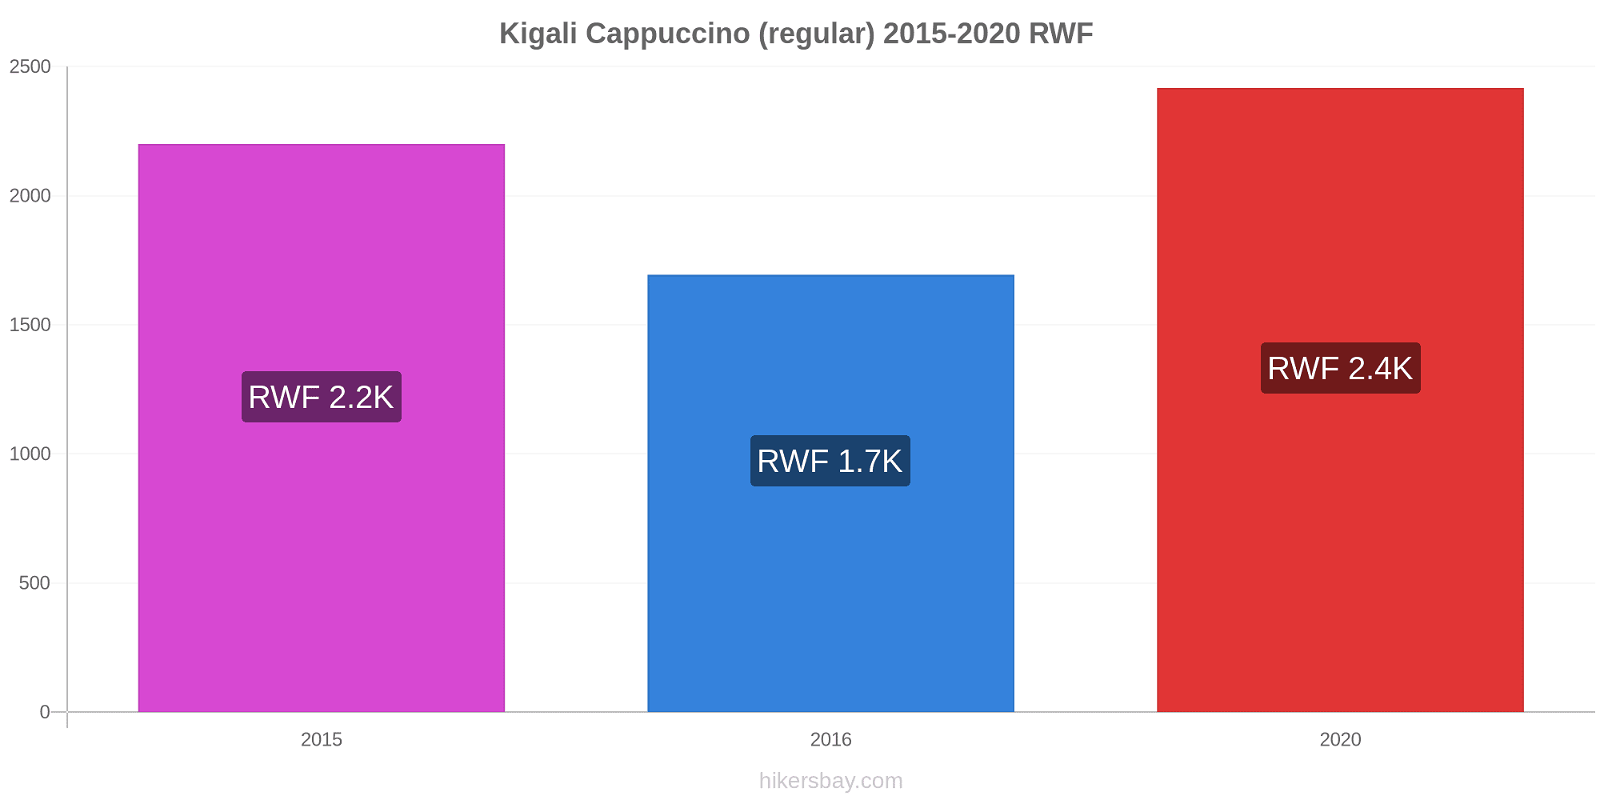 Kigali price changes Cappuccino (regular) hikersbay.com